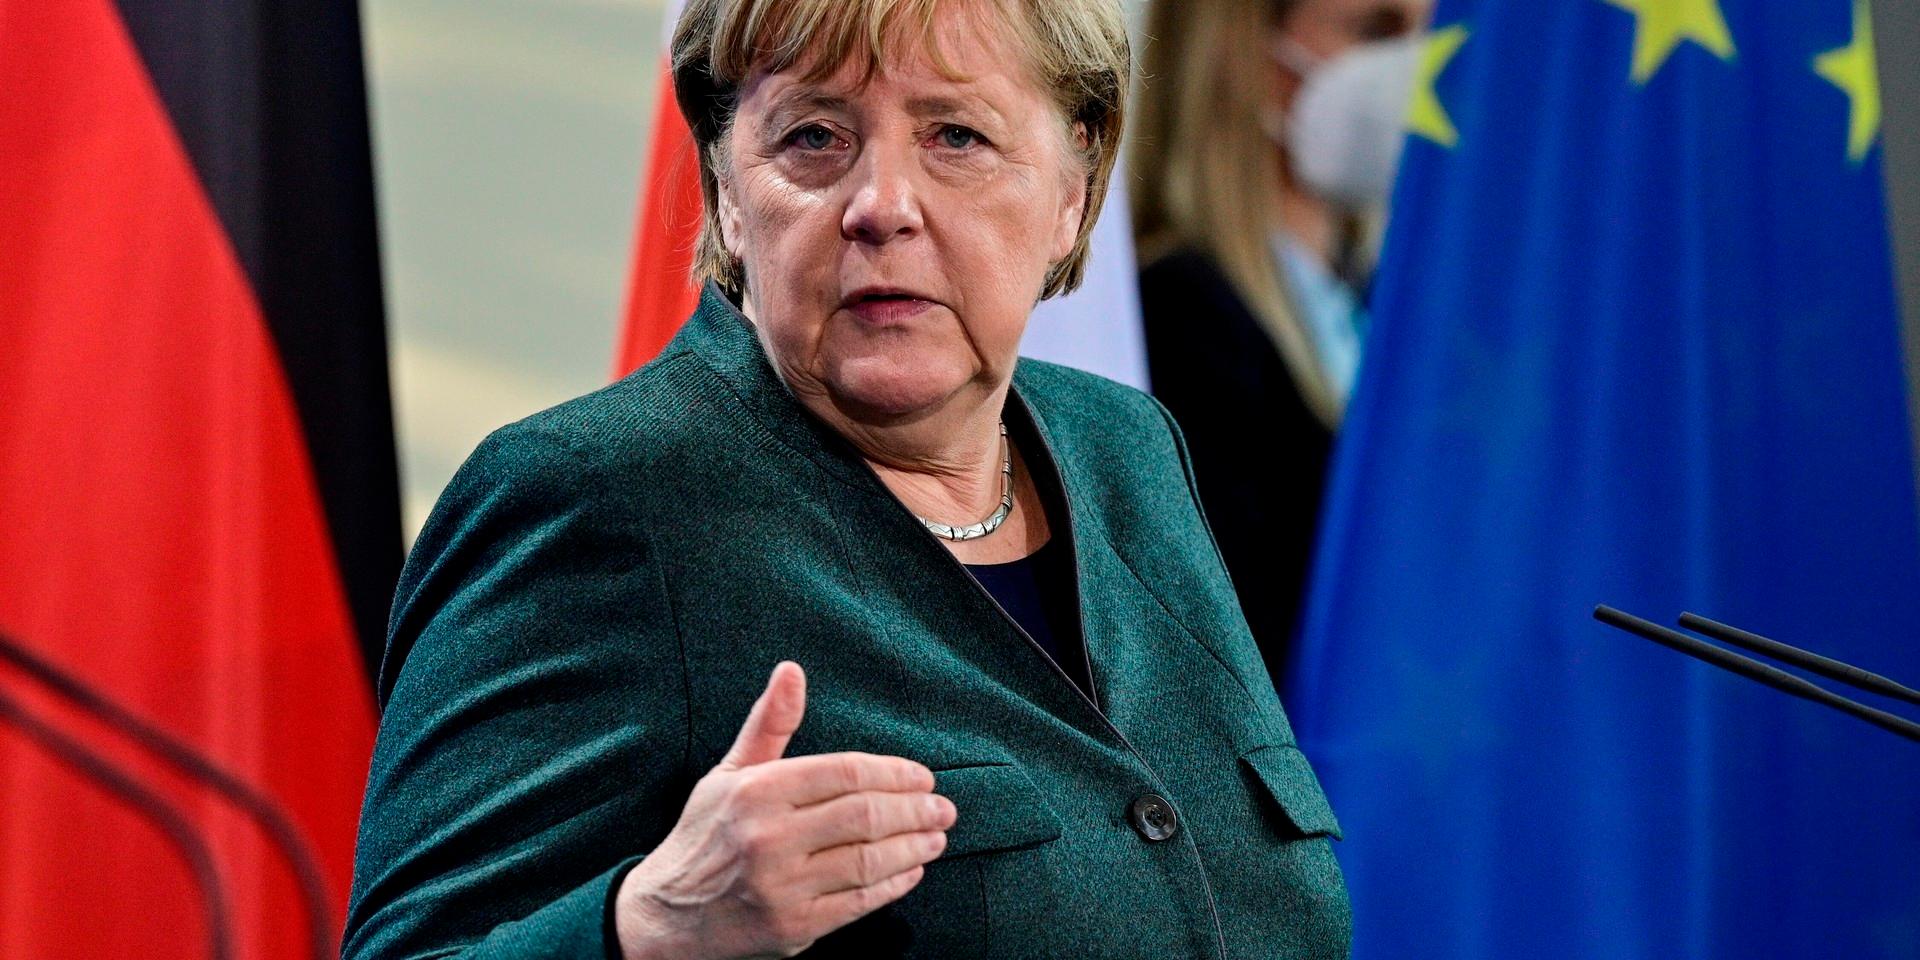 Tysklands avgående förbundskansler Angela Merkel varnar för att fler åtgärder behövs mot covid-19-spridningen.